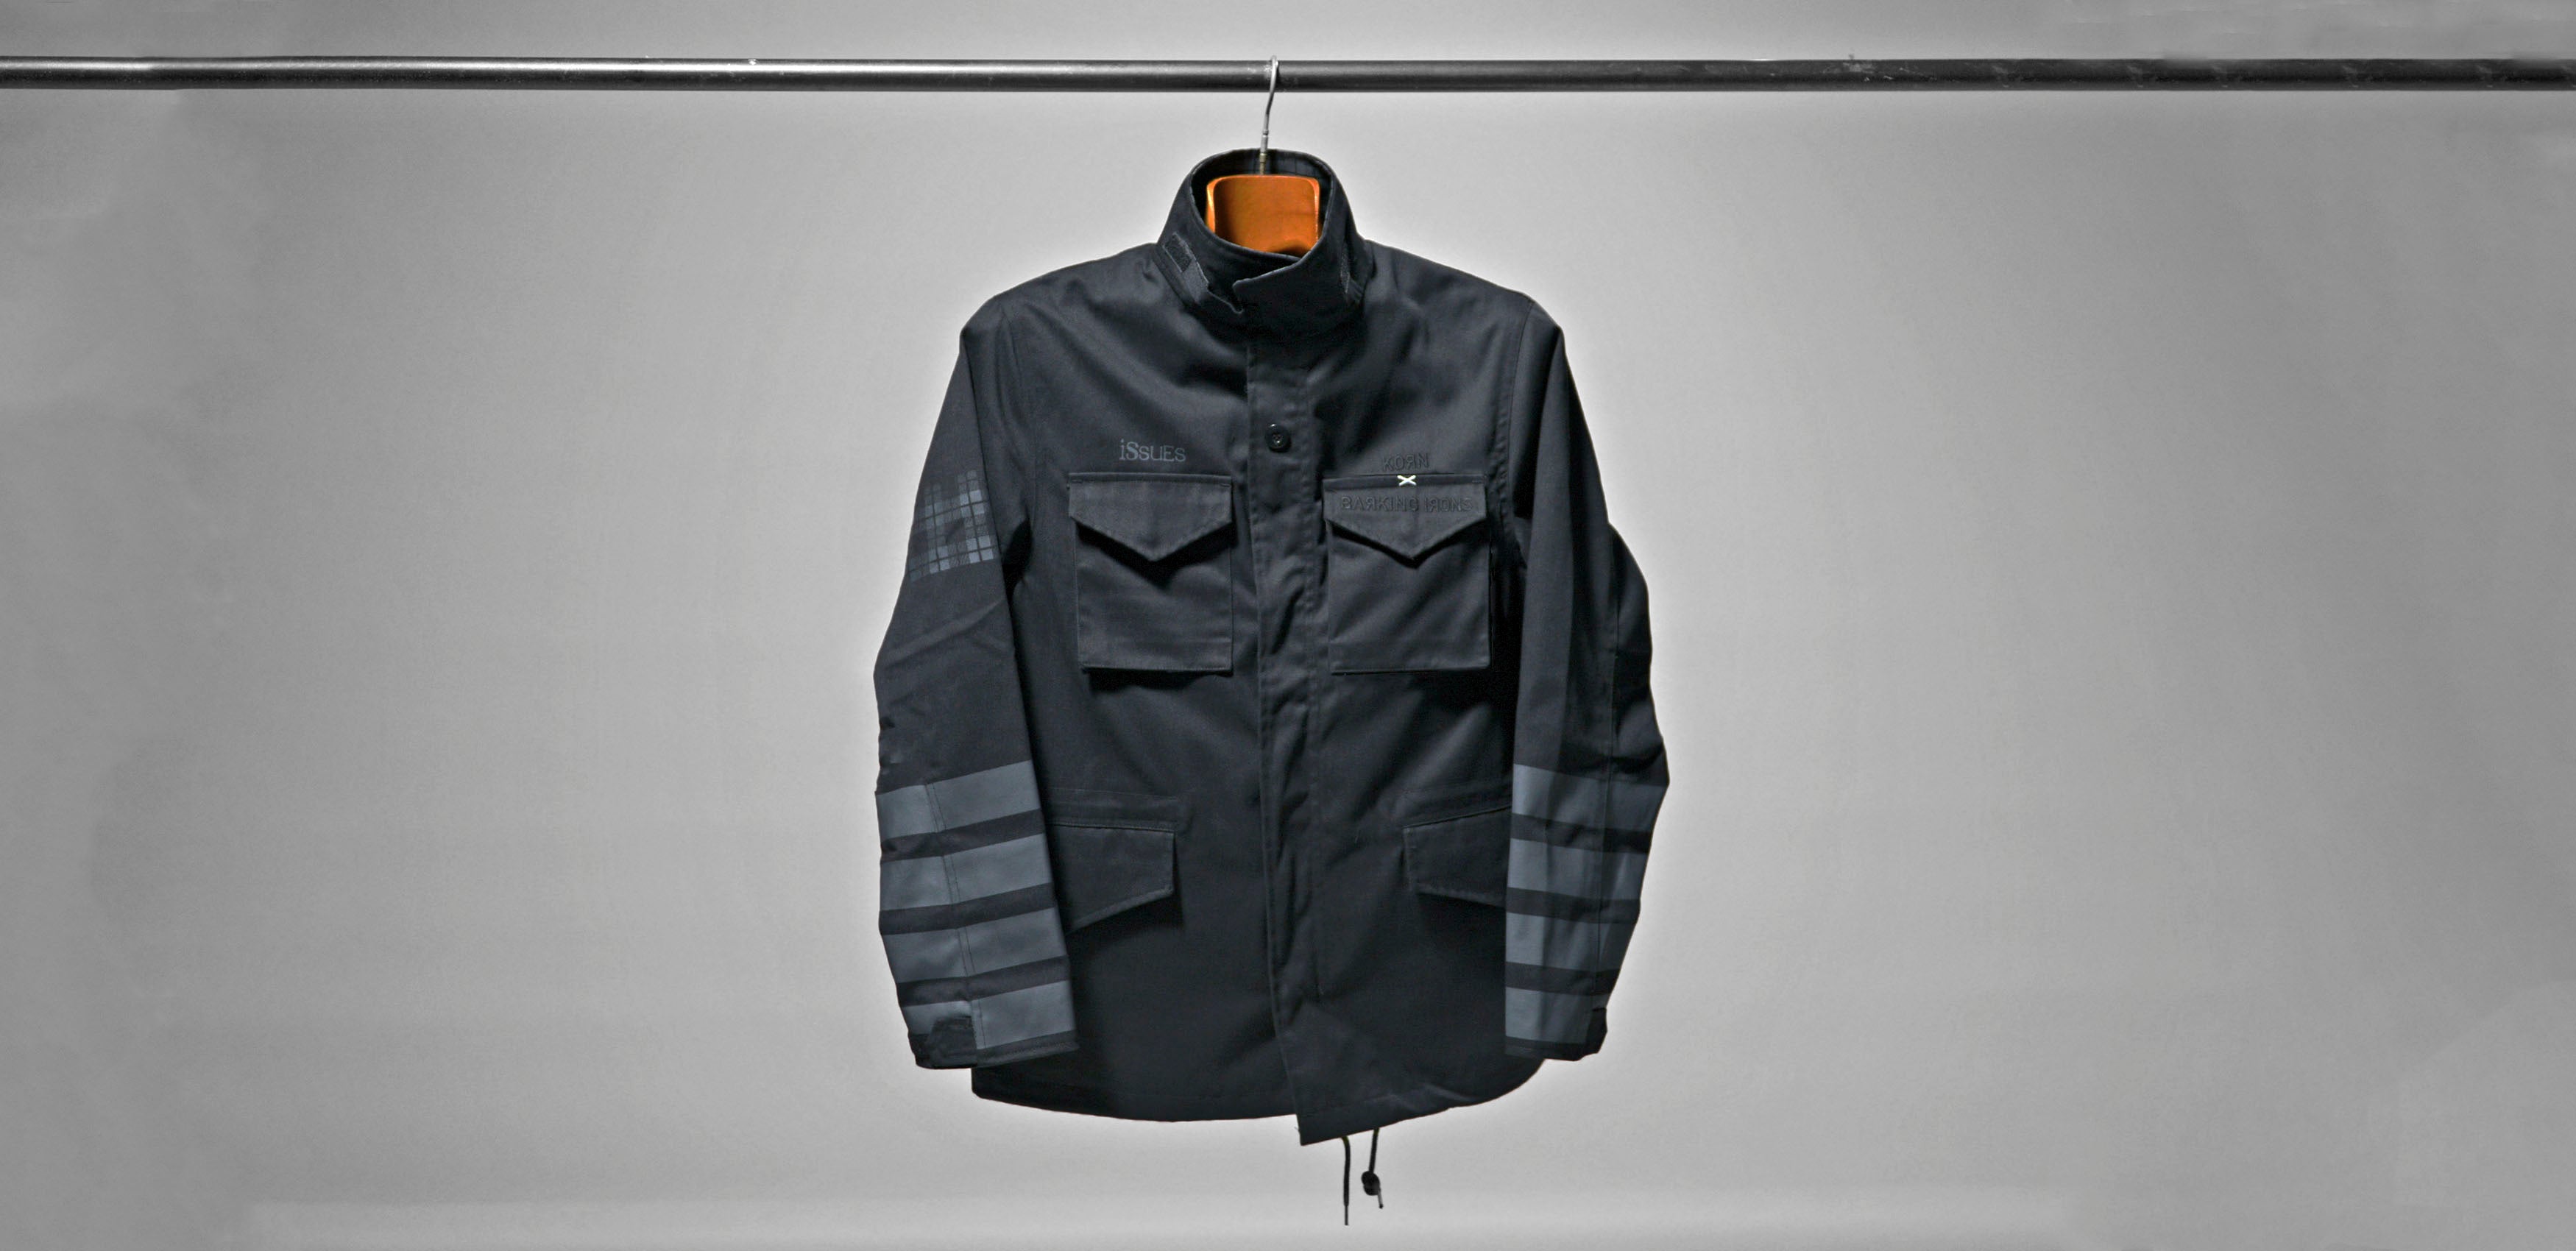 Korn Issues M65 Field Jacket (Black)